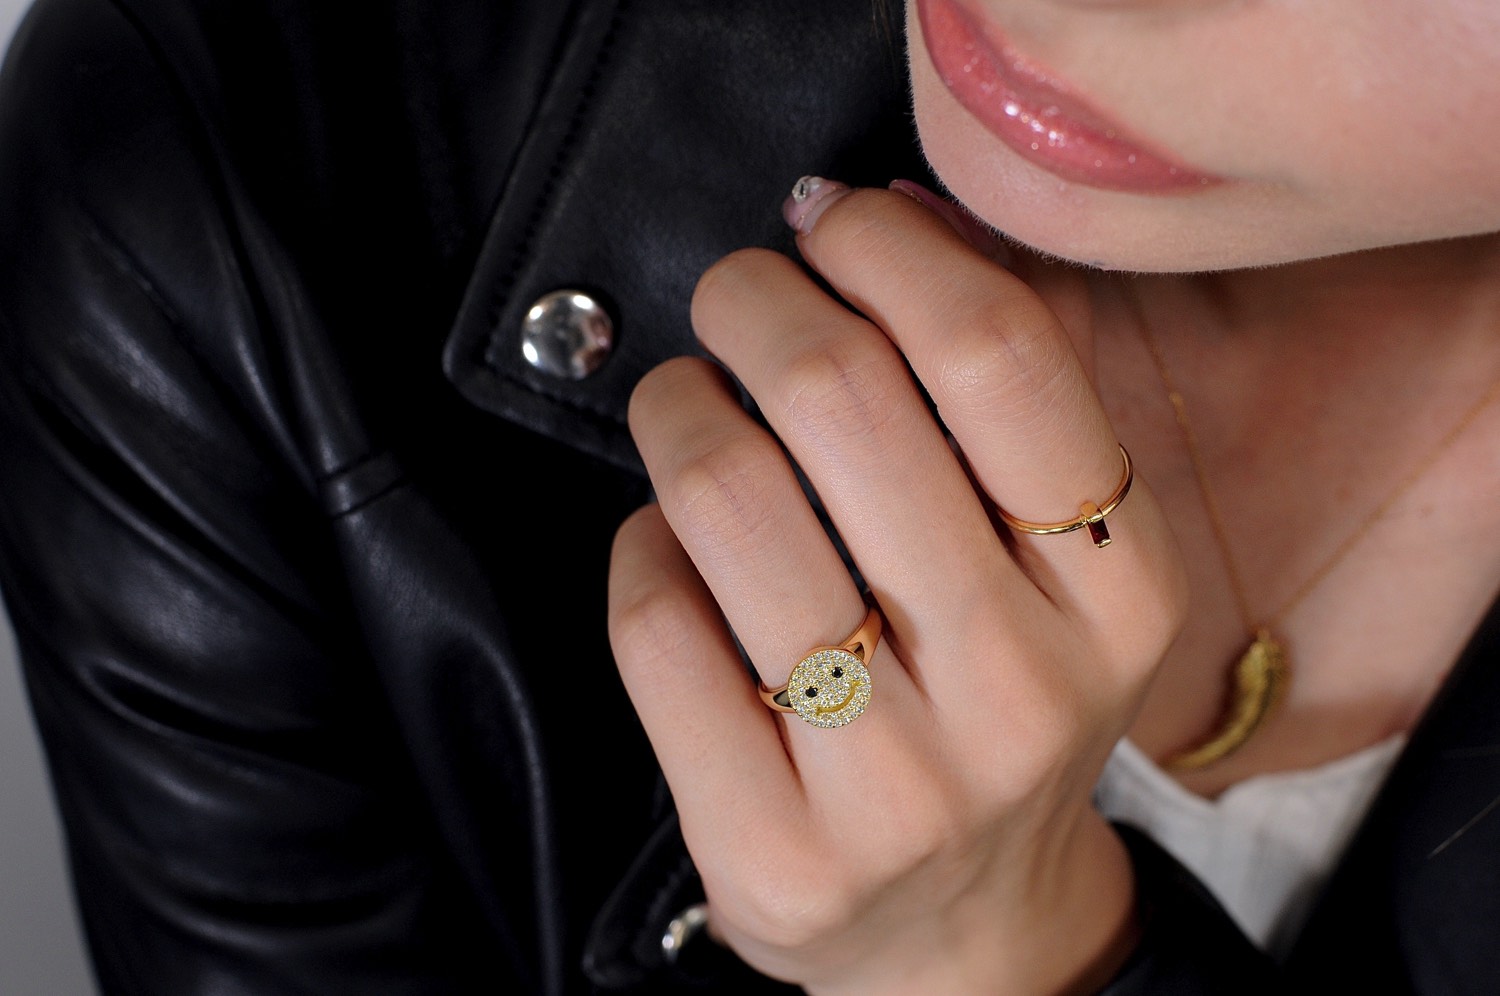 レデッサンドゥデュー 949 スマイル ダイヤモンド ニコちゃん リング 指輪 18金,les desseins de DIEU Smile Diamond Ring K18